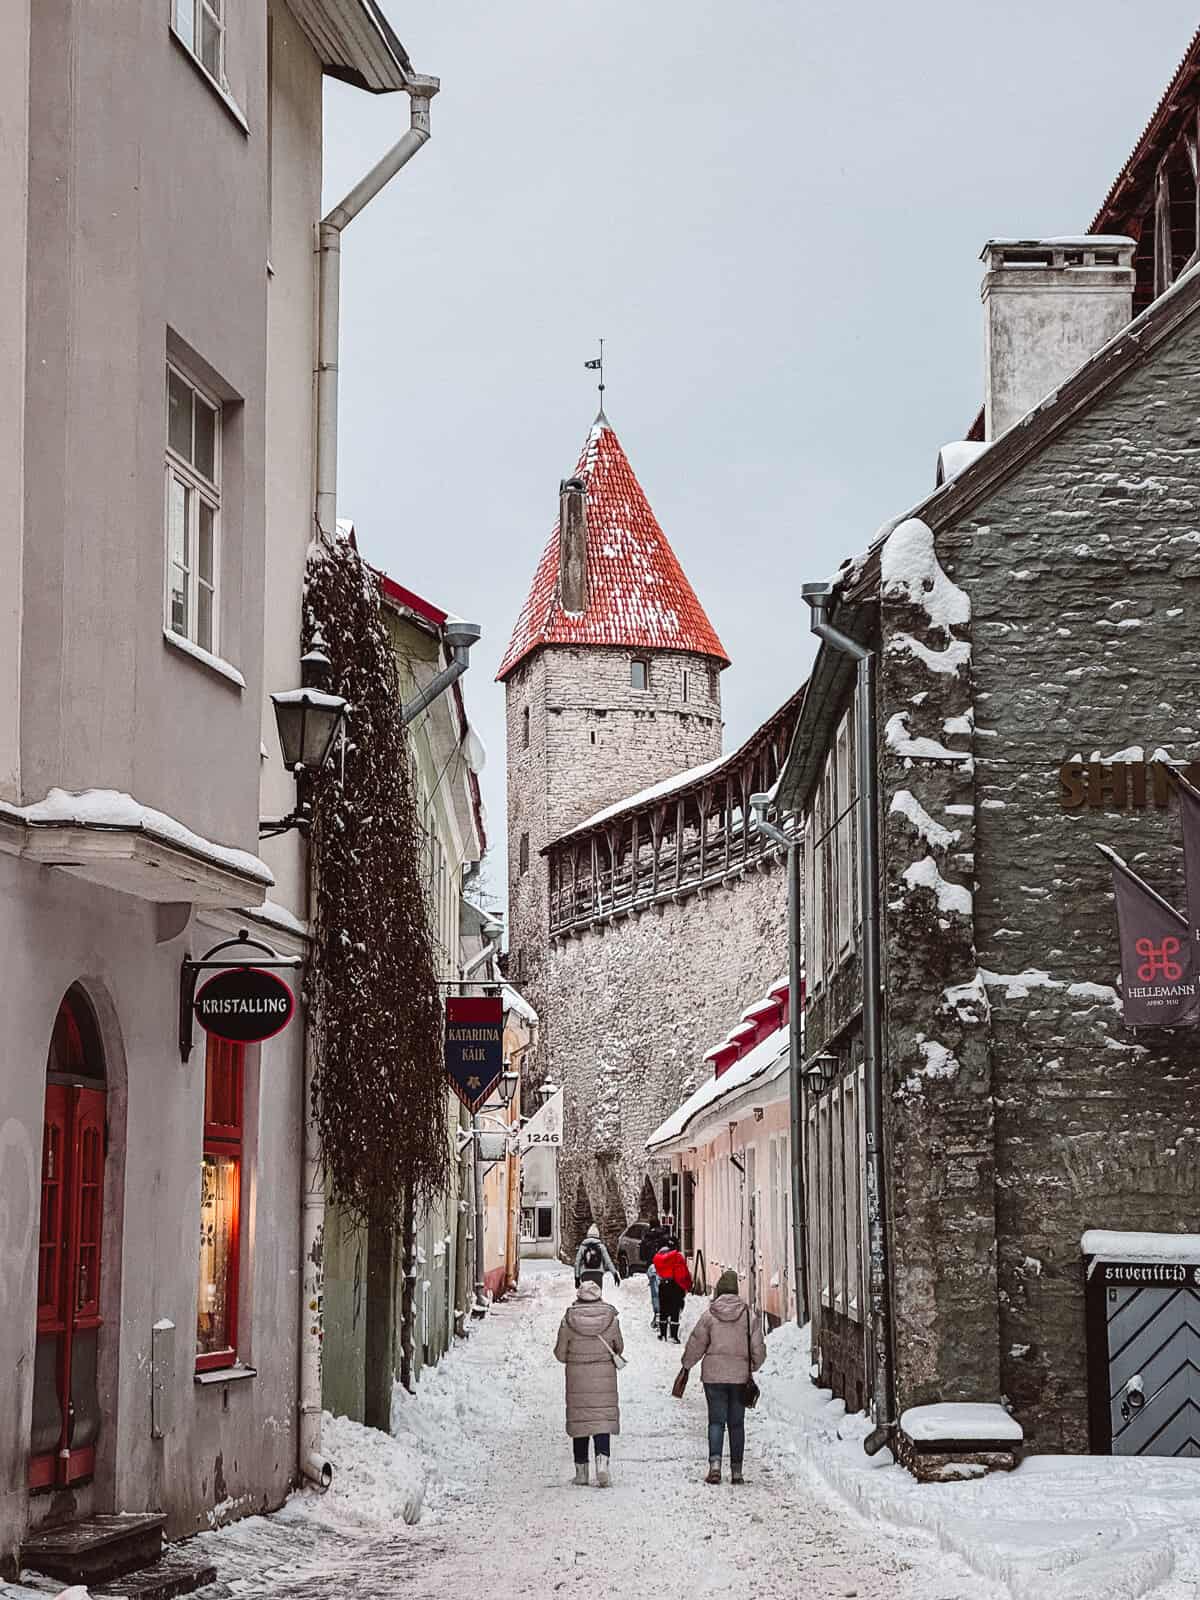 2 people walking down a street in Tallinn
